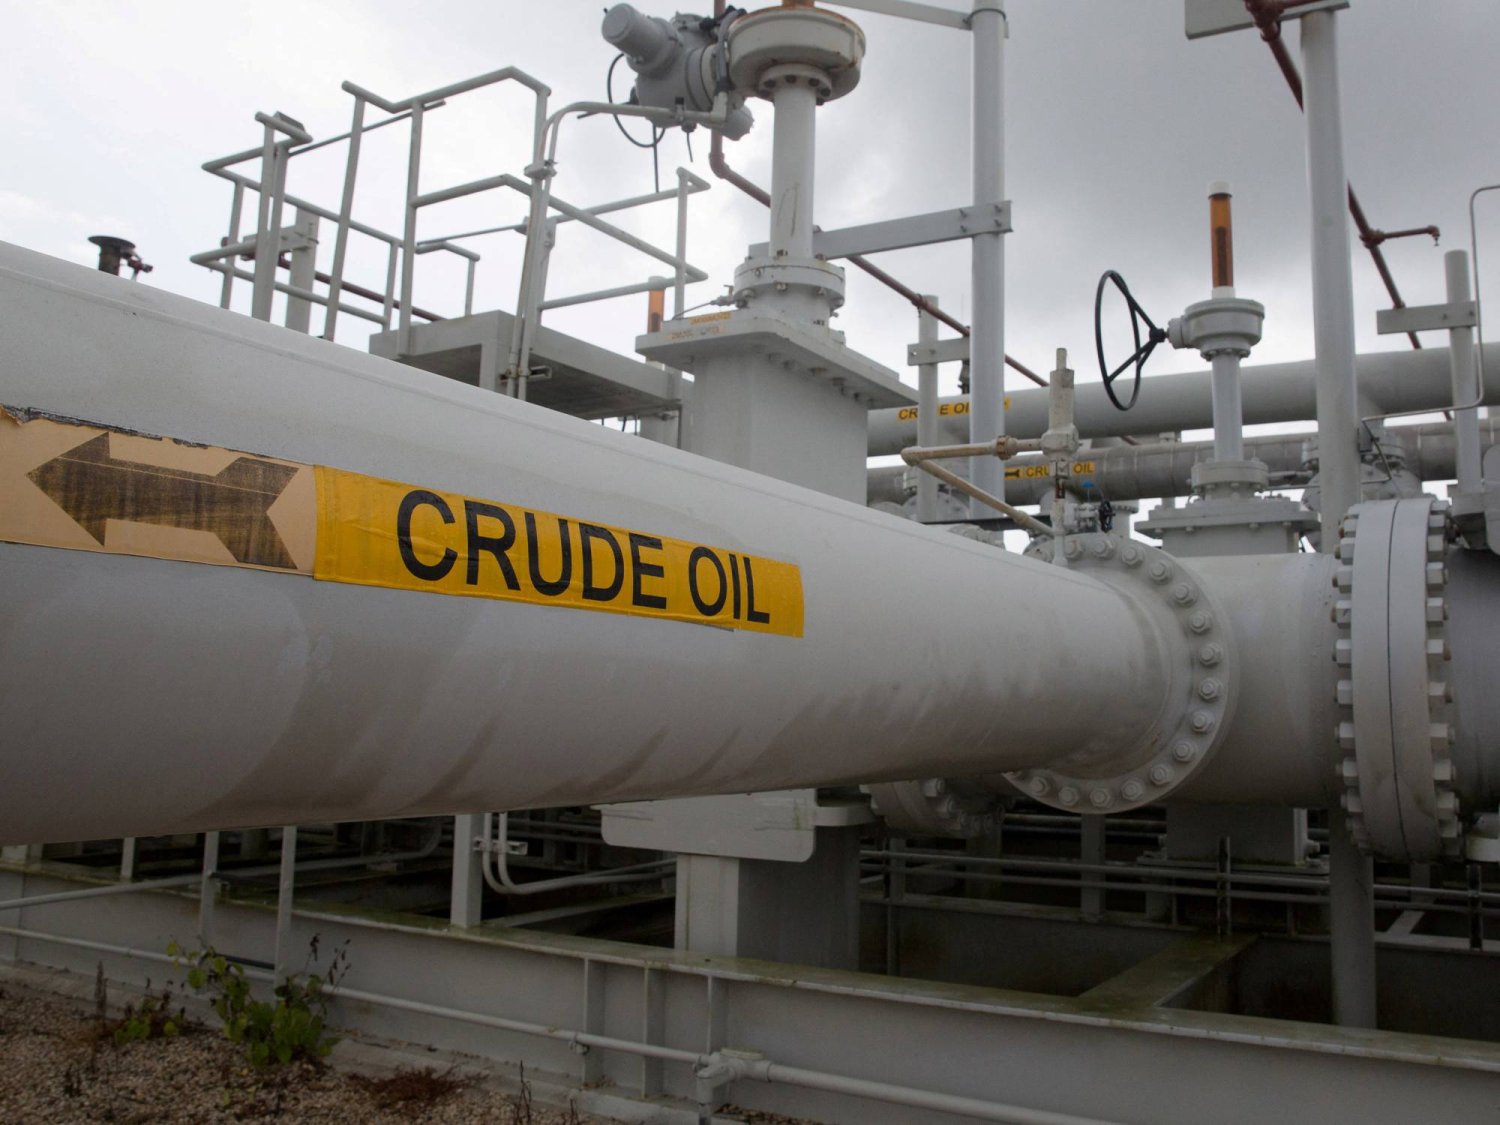 أنابيب النفط الخام لاحتياطي النفط الاستراتيجي في فريبورت بولاية تكساس الأميركية (رويترز)